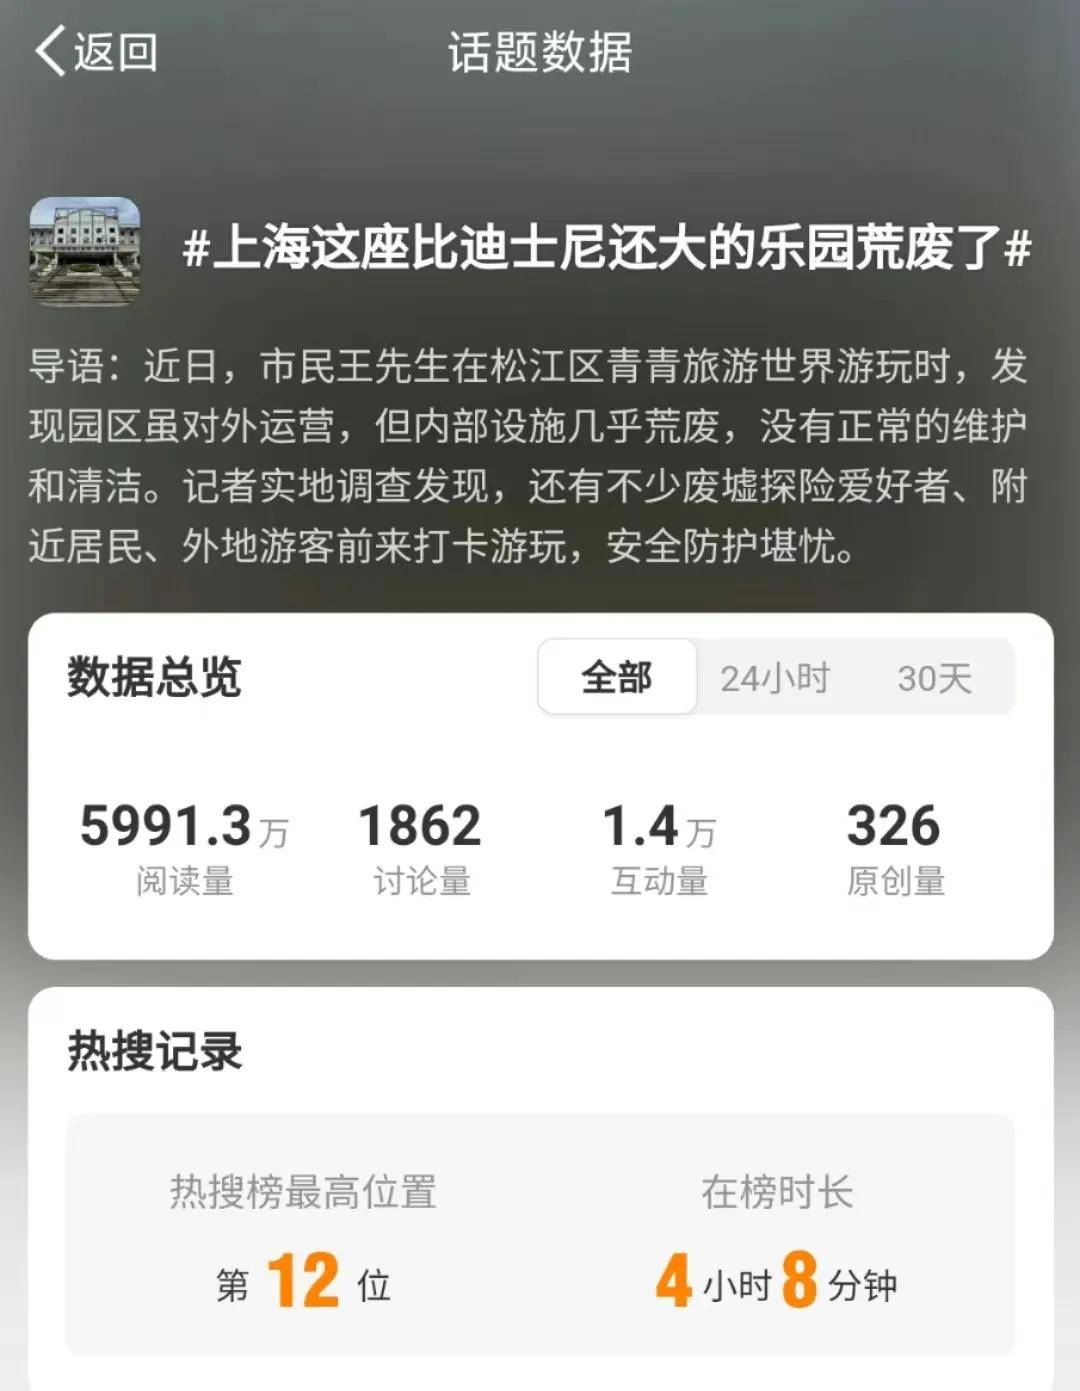 上海欢乐谷门票多少钱图片